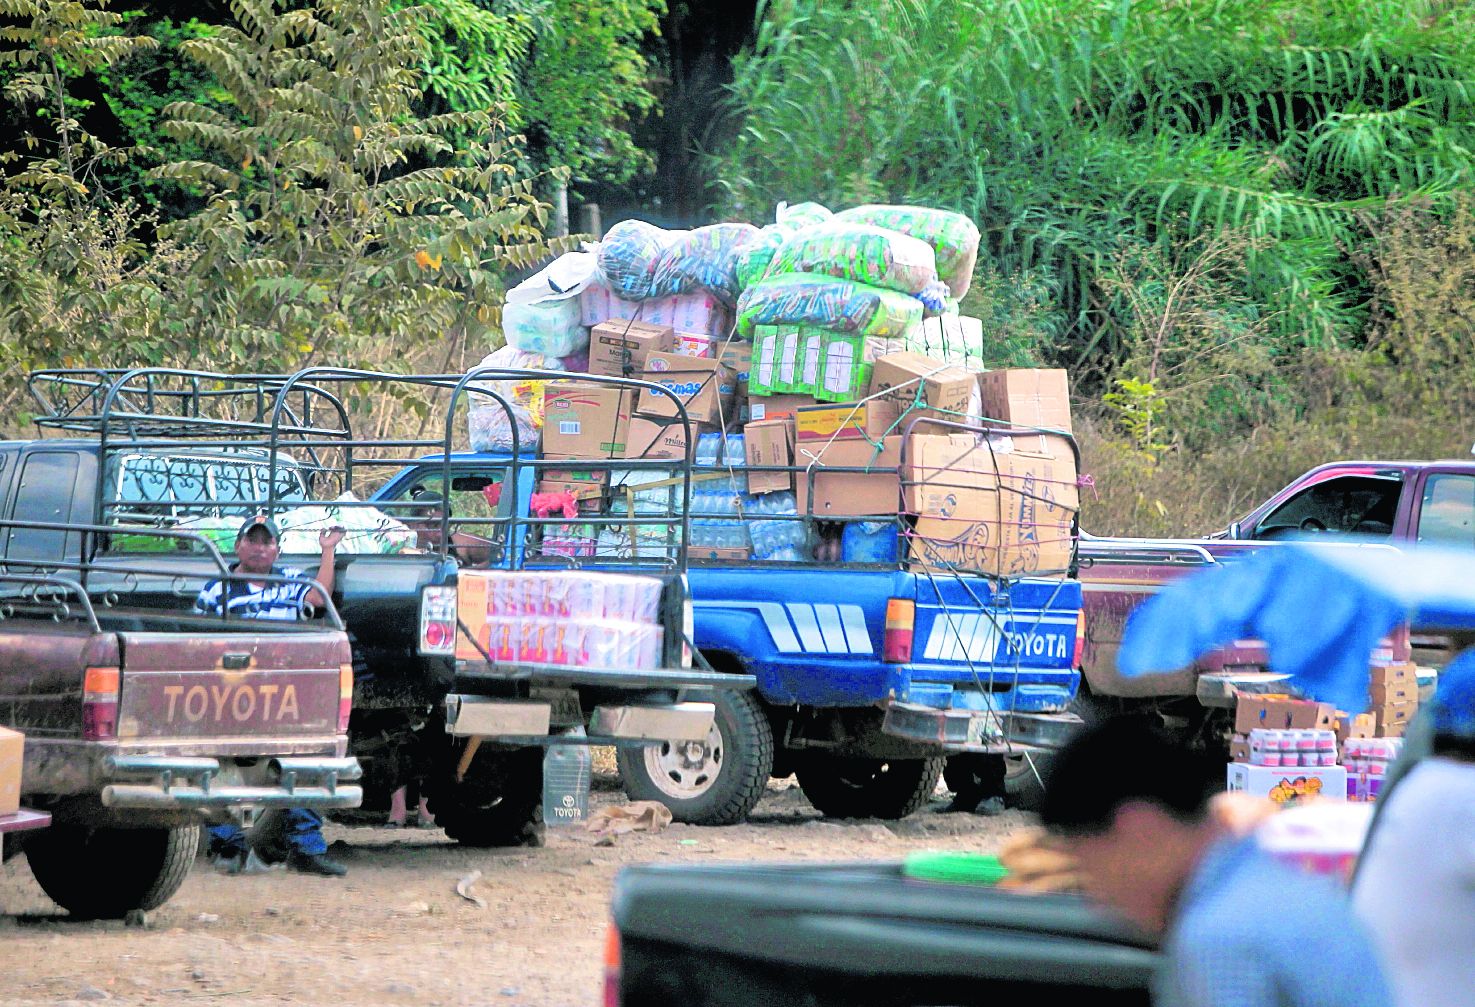 Mercadería de contrabando recién adquirida en la frontera México- San Marcos. (Foto Prensa Libre: Hemeroteca PL)